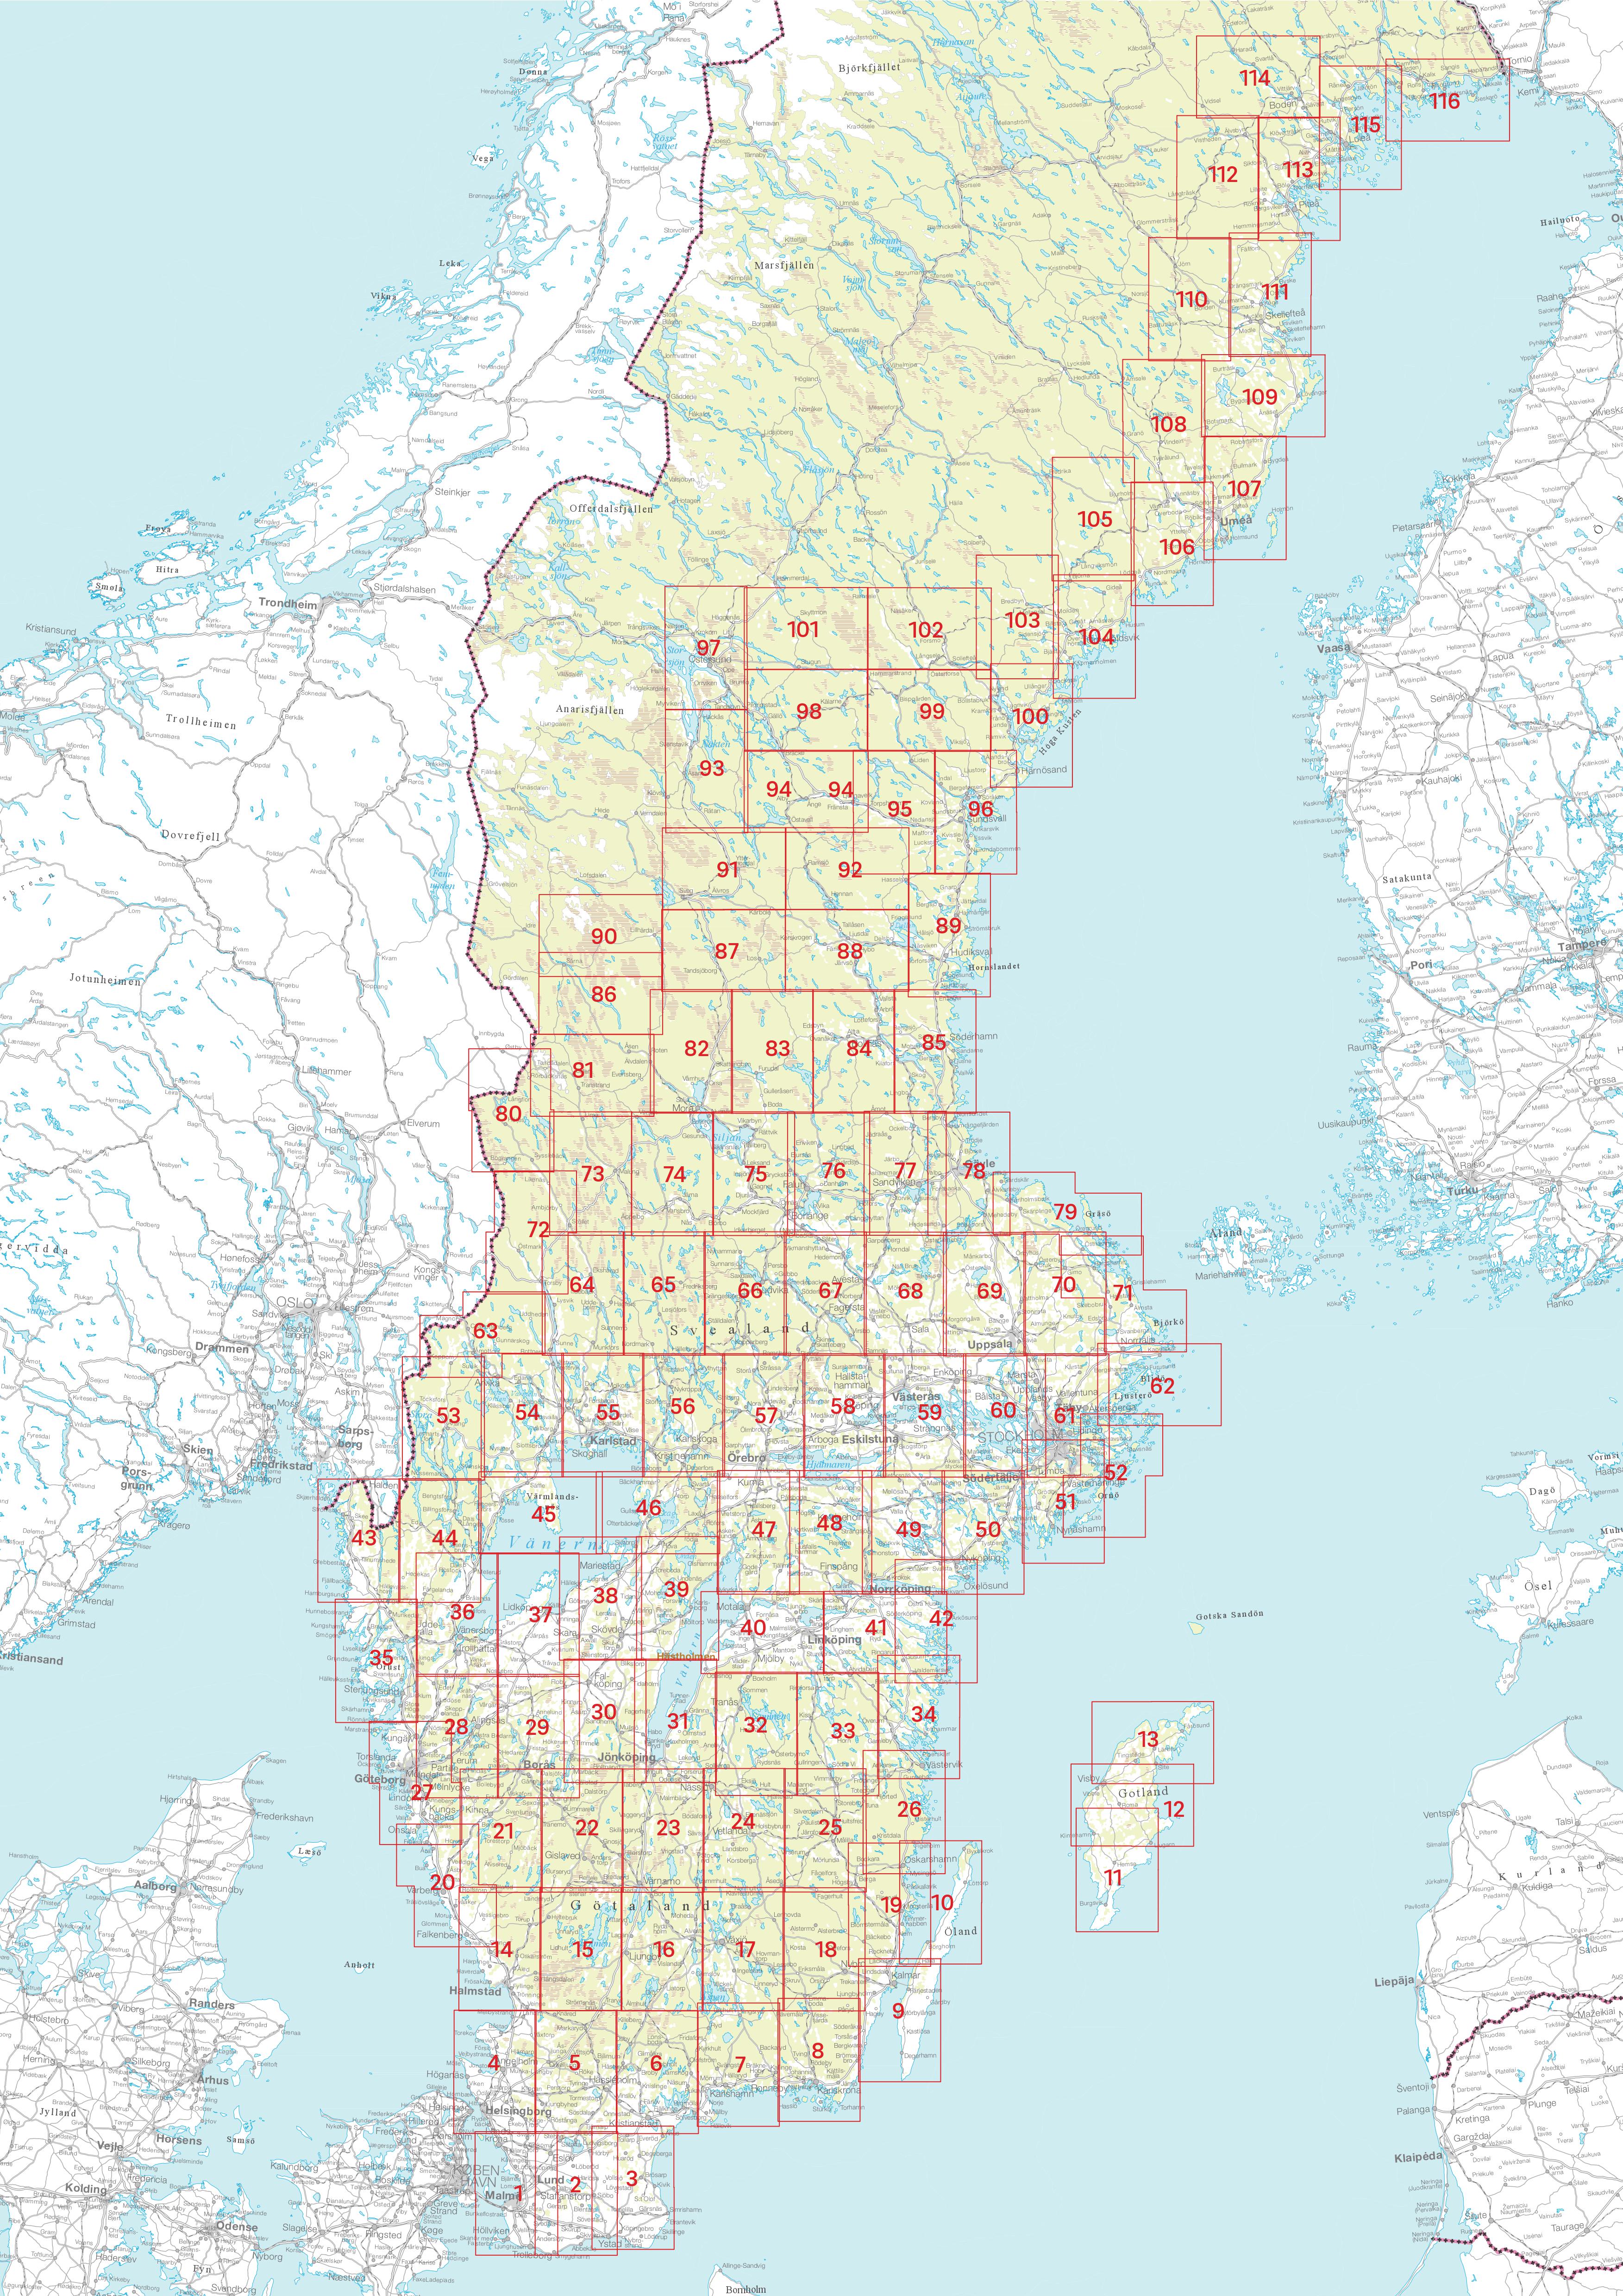 Sverigeserien 1:50.000 Wanderkarten Schweden (72 Torsby - 116 Kalix)